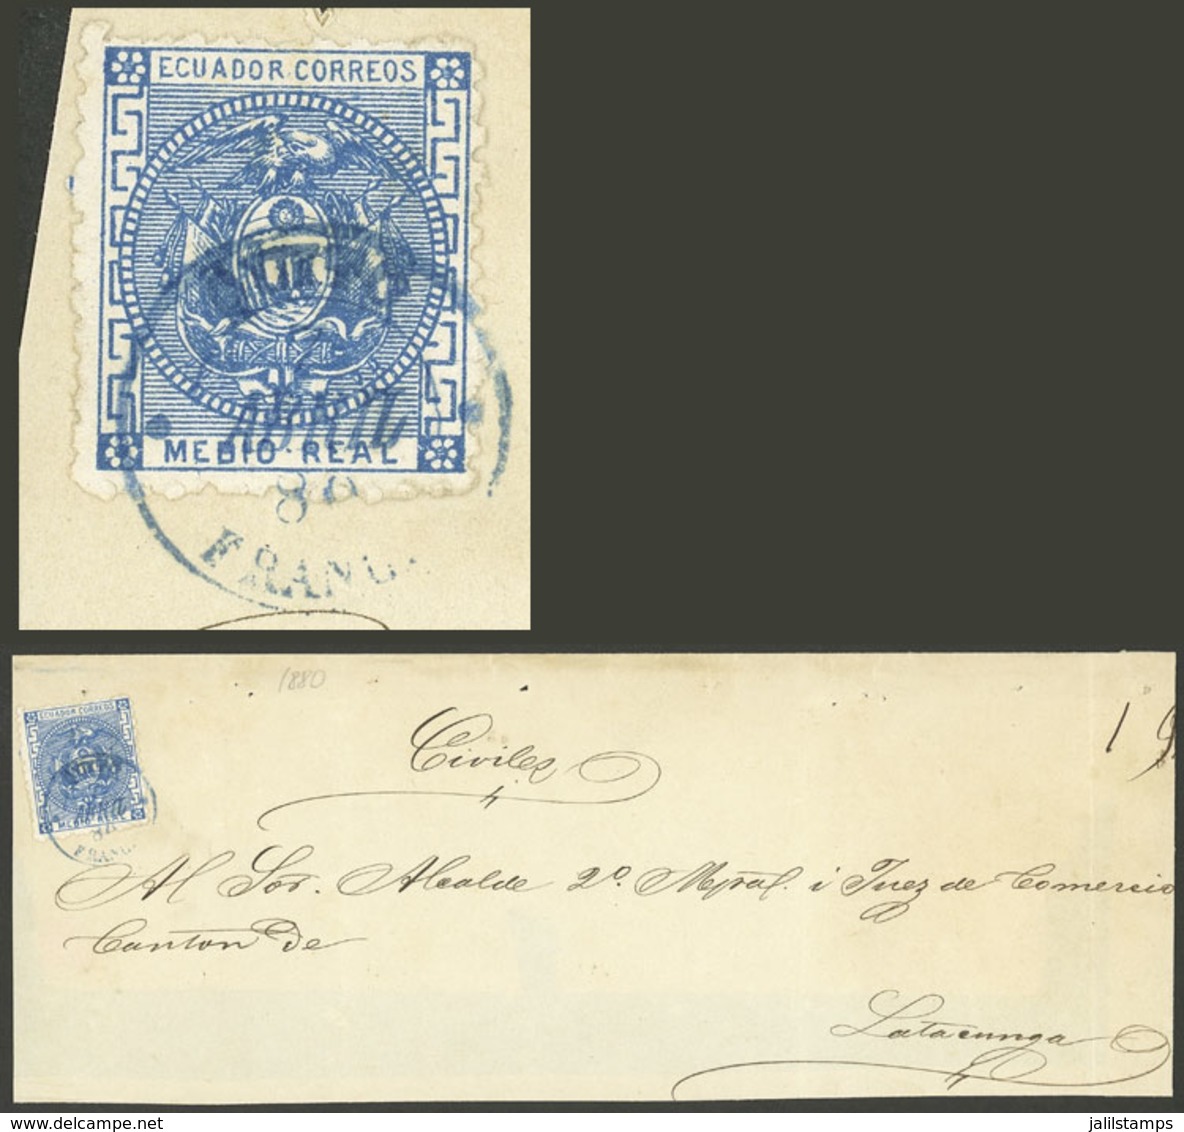 ECUADOR: Sc.9, 1872 ½R. Blue, Franking A Folded Cover From Quito To Lacatunga 2/AP/1872, Handsome! - Ecuador